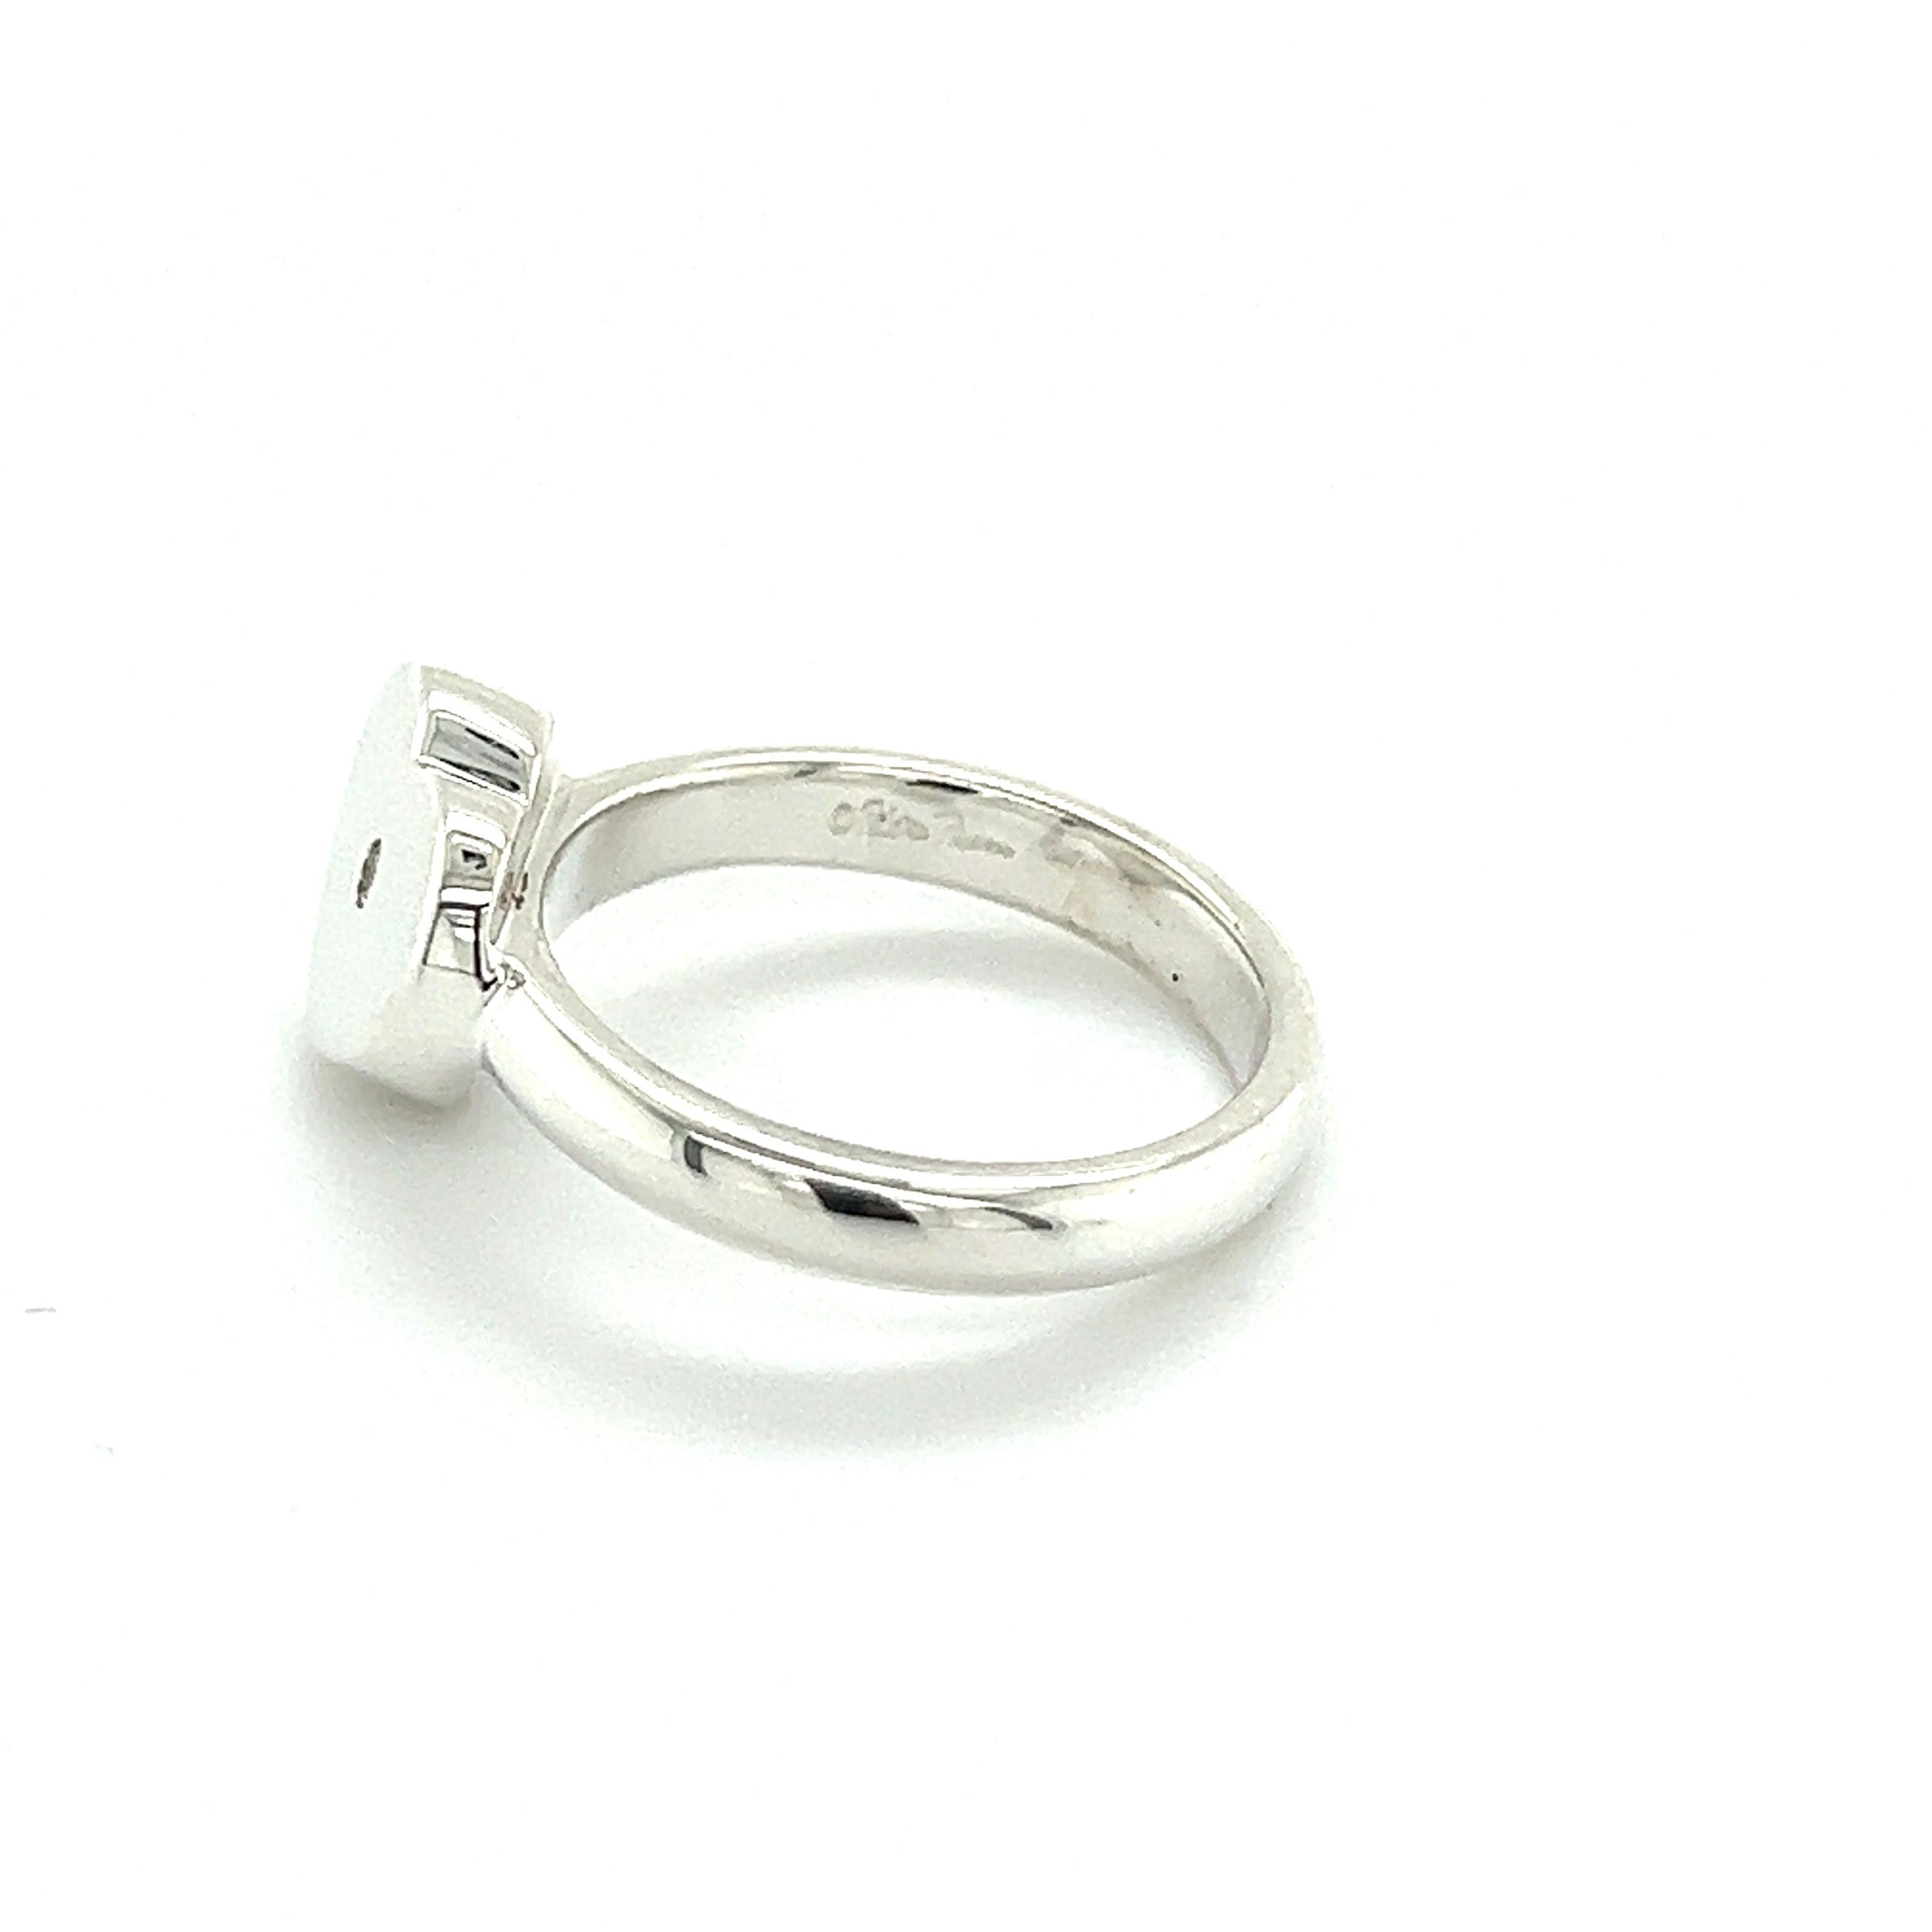 Brilliant Cut Tiffany & Co Authentic Estate Heart Diamond Ring Size 8.5 Silver 